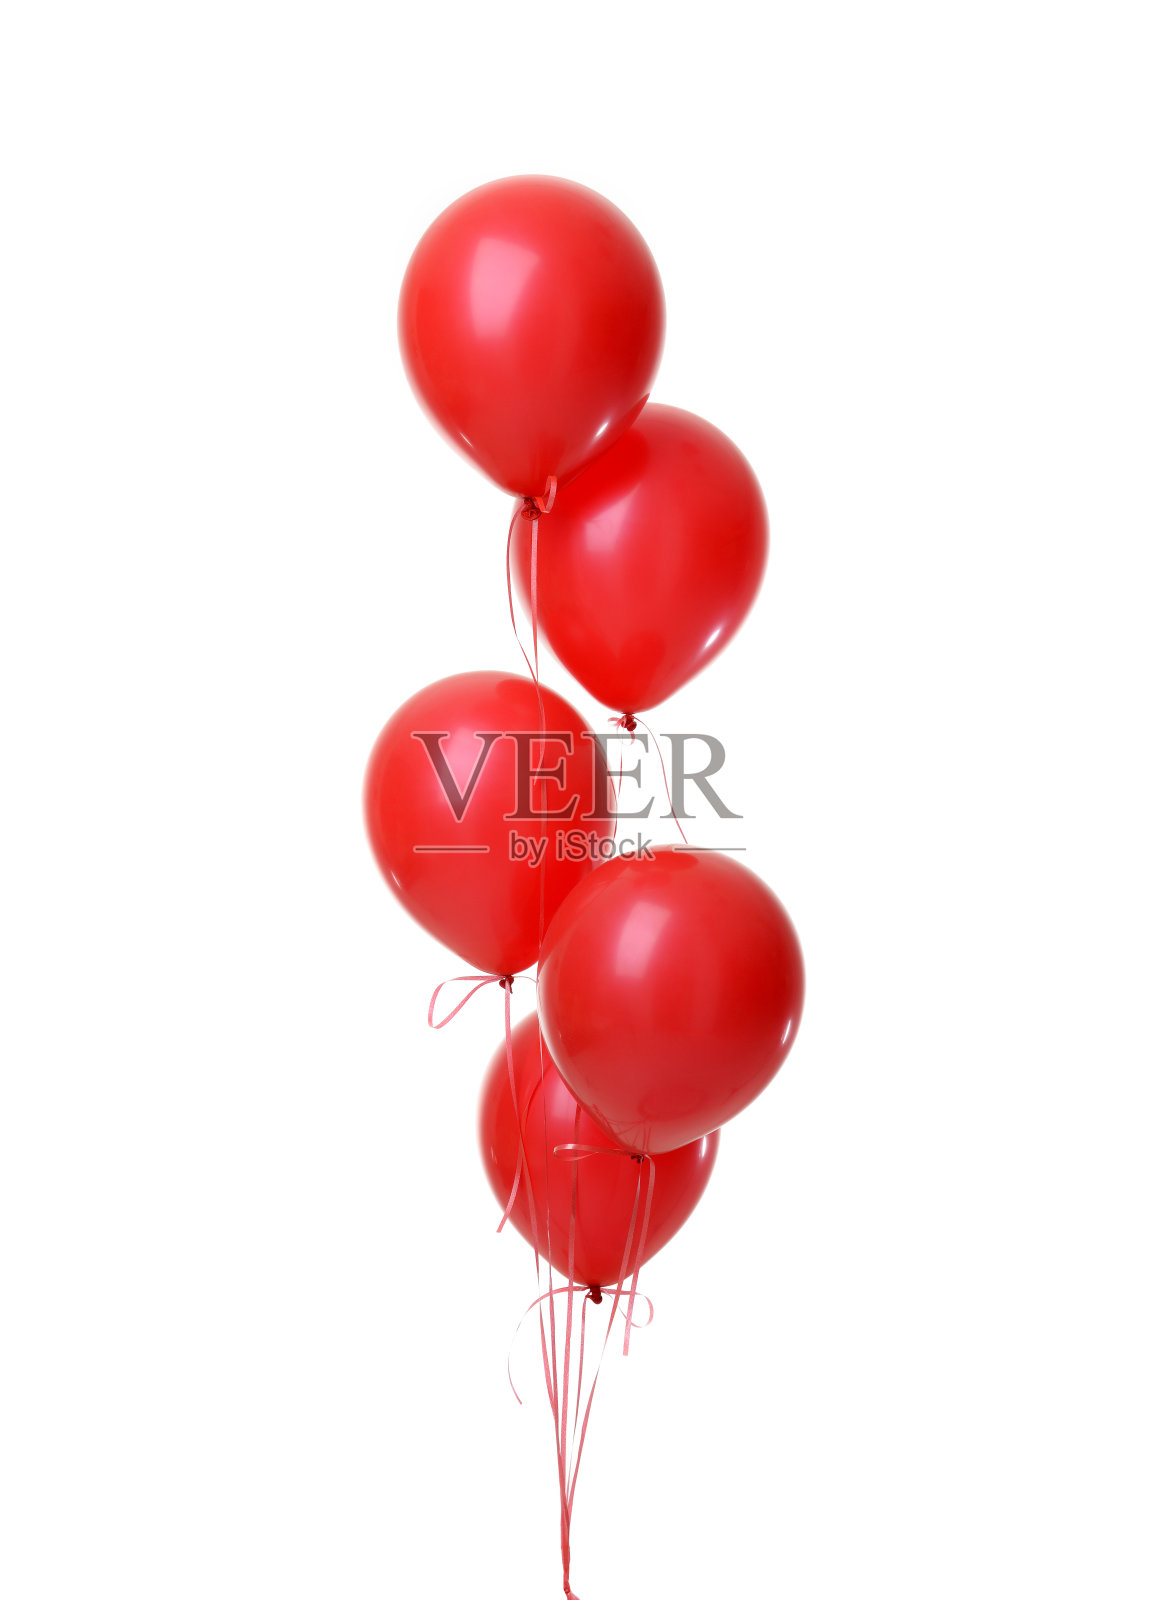 一堆红色的大气球用于生日聚会照片摄影图片